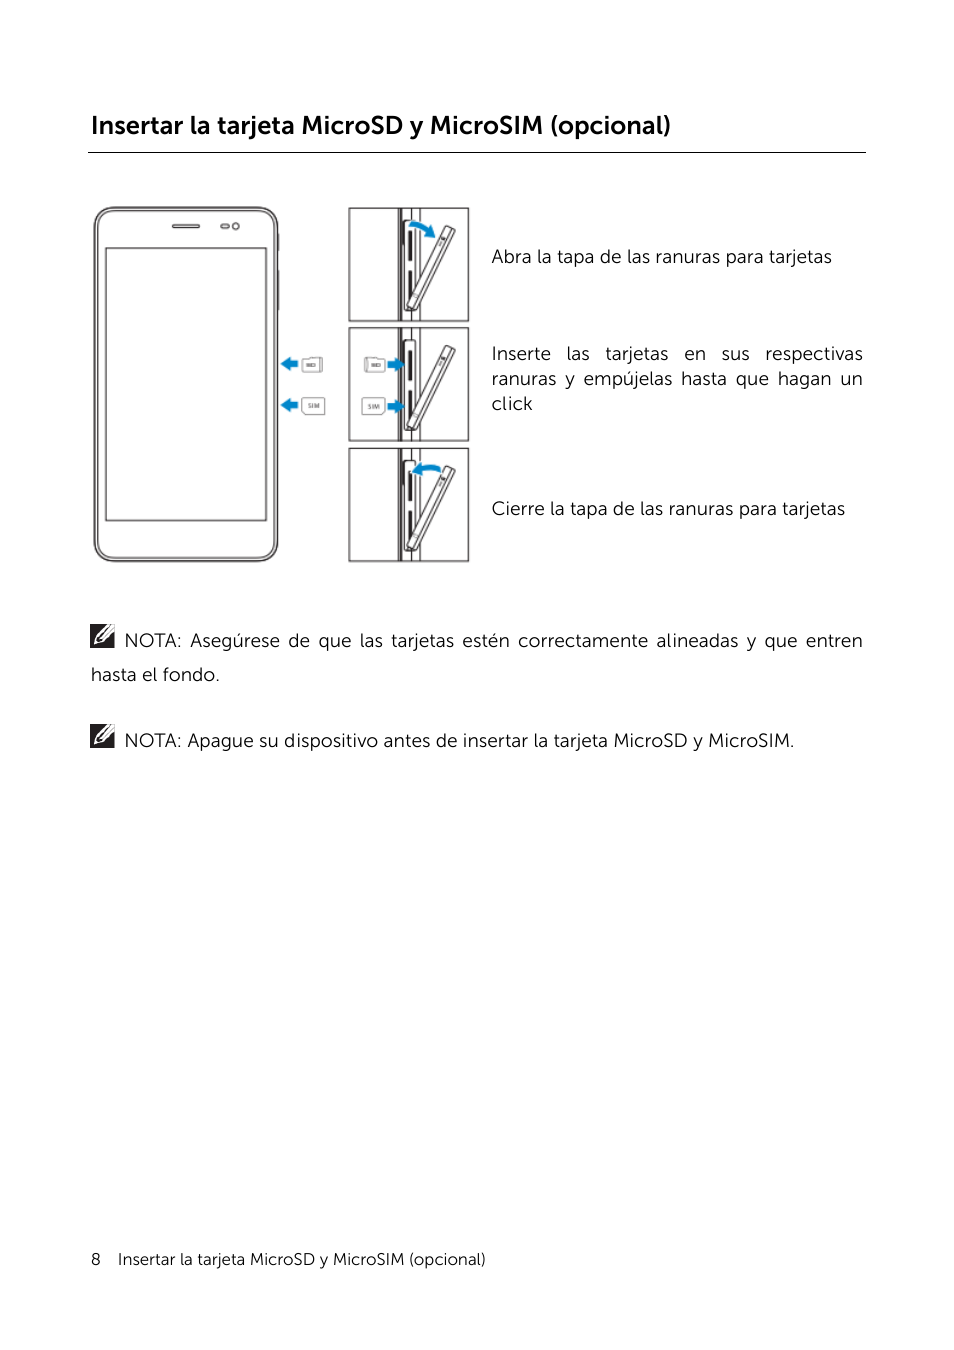 Insertar la tarjeta microsd y microsim (opcional) | Dell Venue 7 (3741, Late 2014) Manual del usuario | Página 8 / 30